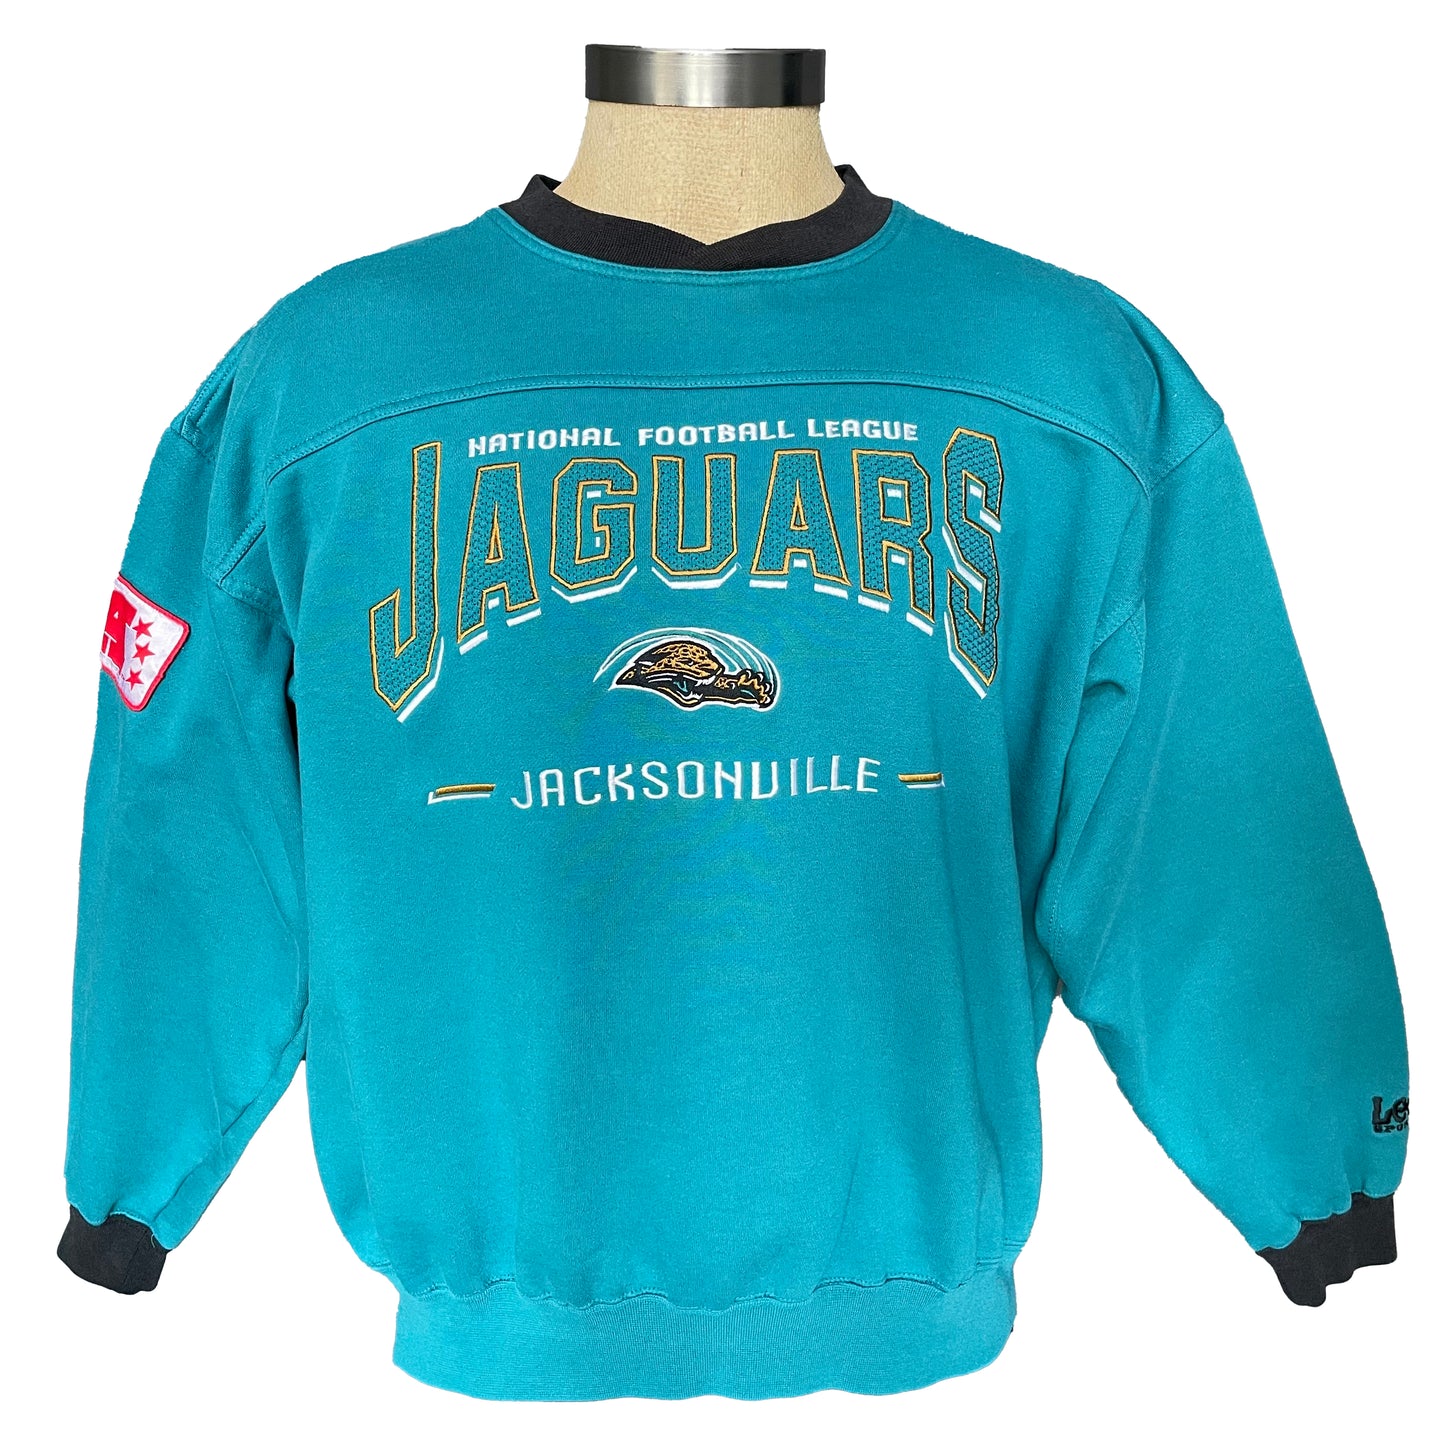 Vintage Jacksonville Jaguars embroidered sweatshirt size LARGE